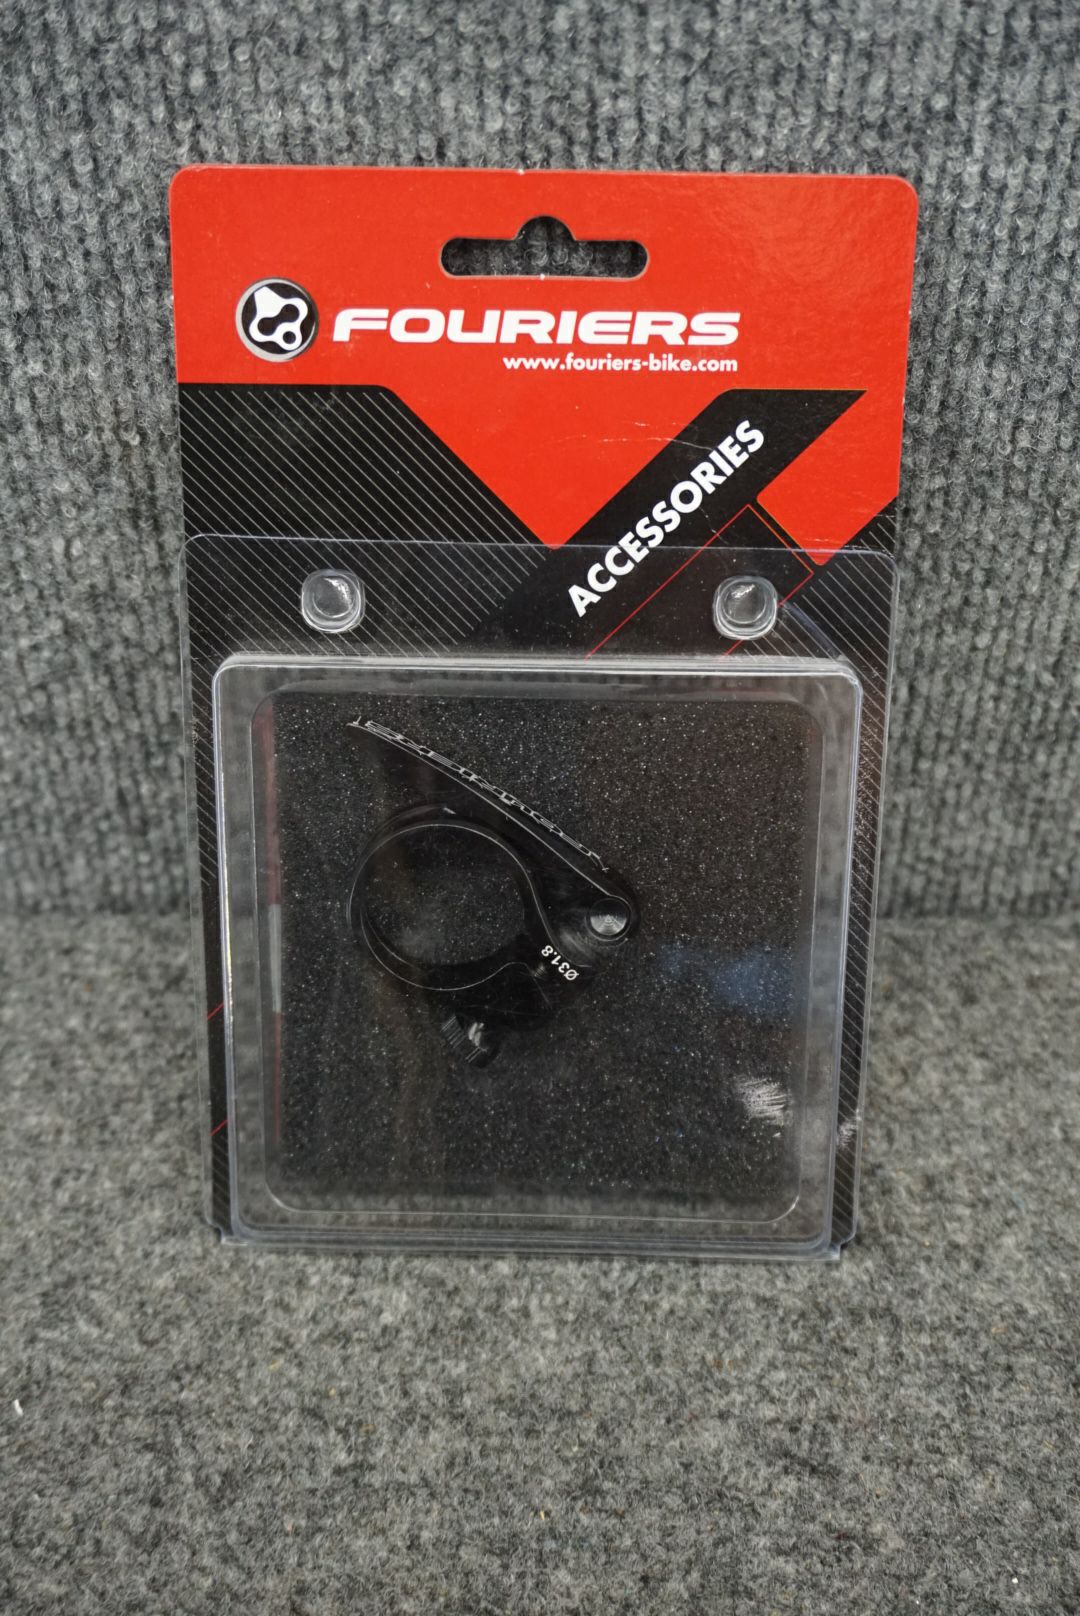 Fouriers Diameter 31.8mm Seatpost Clamp